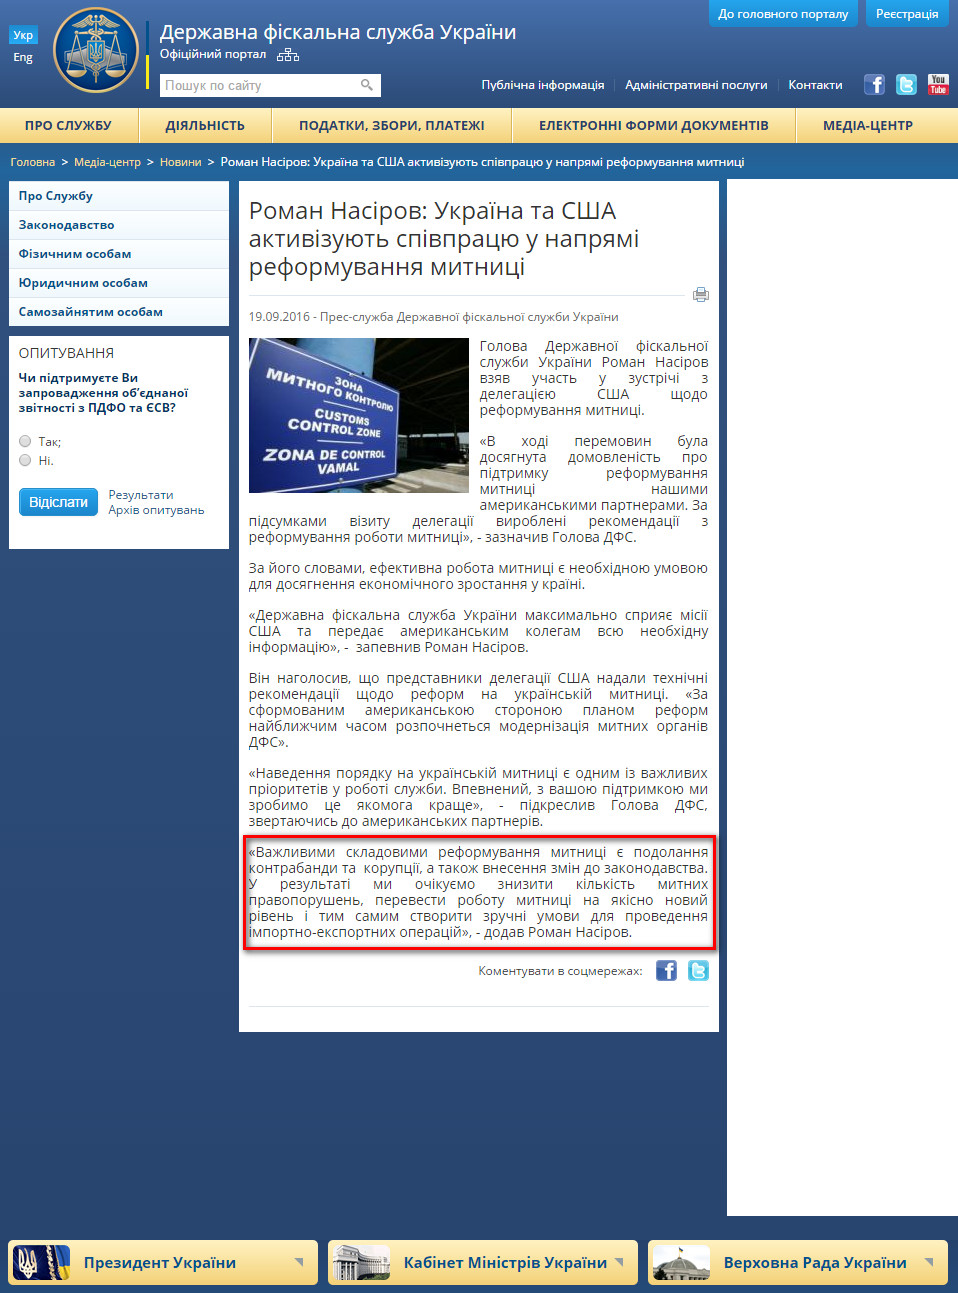 http://sfs.gov.ua/media-tsentr/novini/267270.html